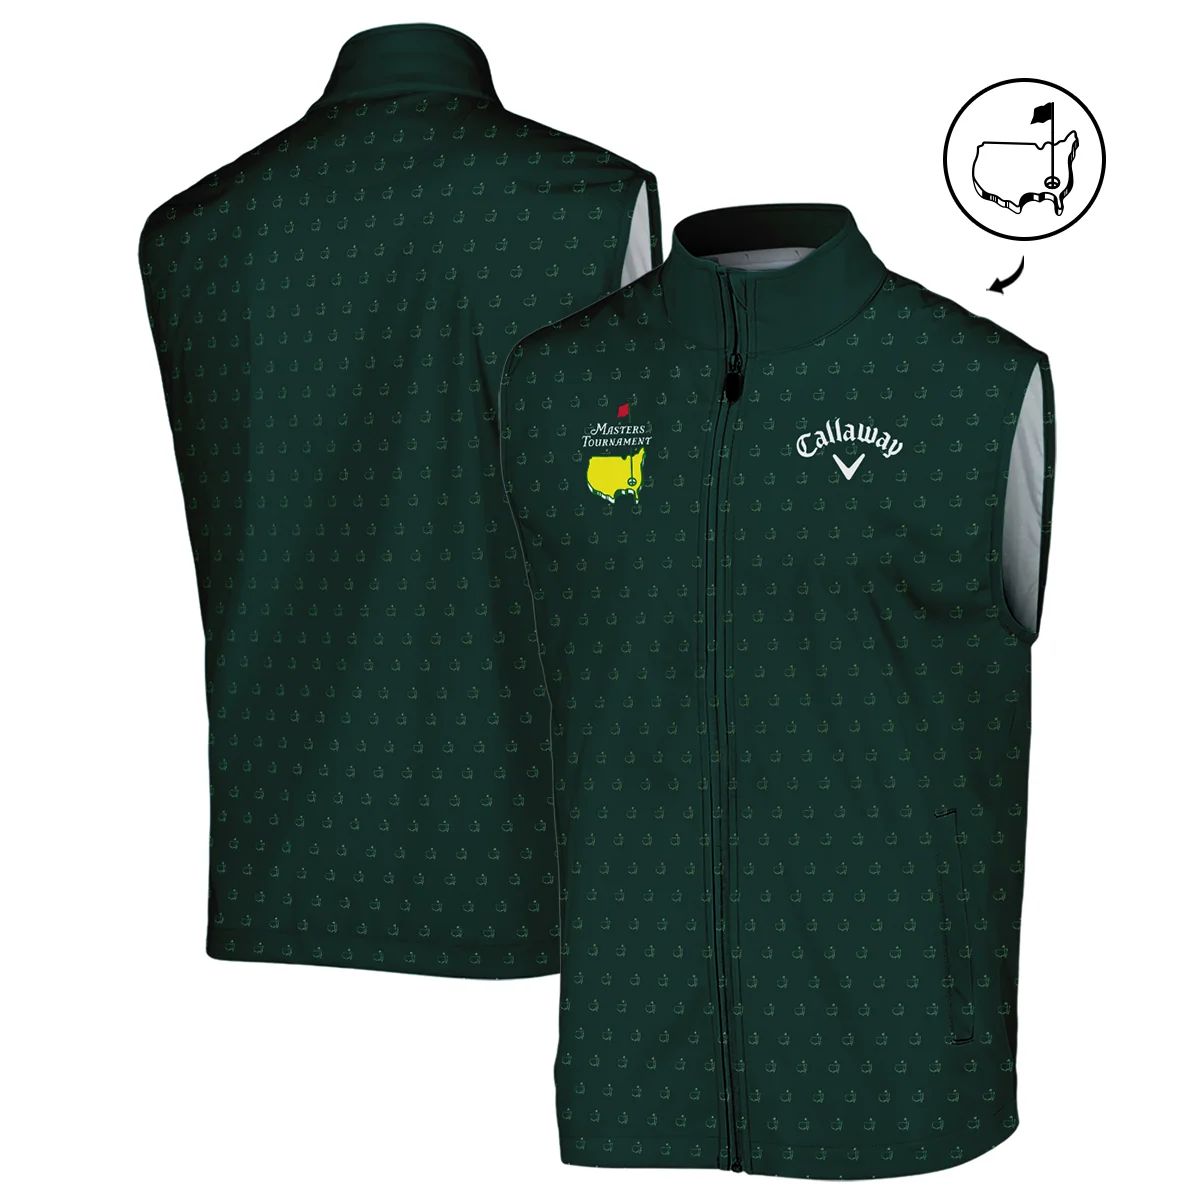 Golf Masters Tournament Callaway Zipper Polo Shirt Logo Pattern Gold Green Golf Sports All Over Print Zipper Polo Shirt For Men